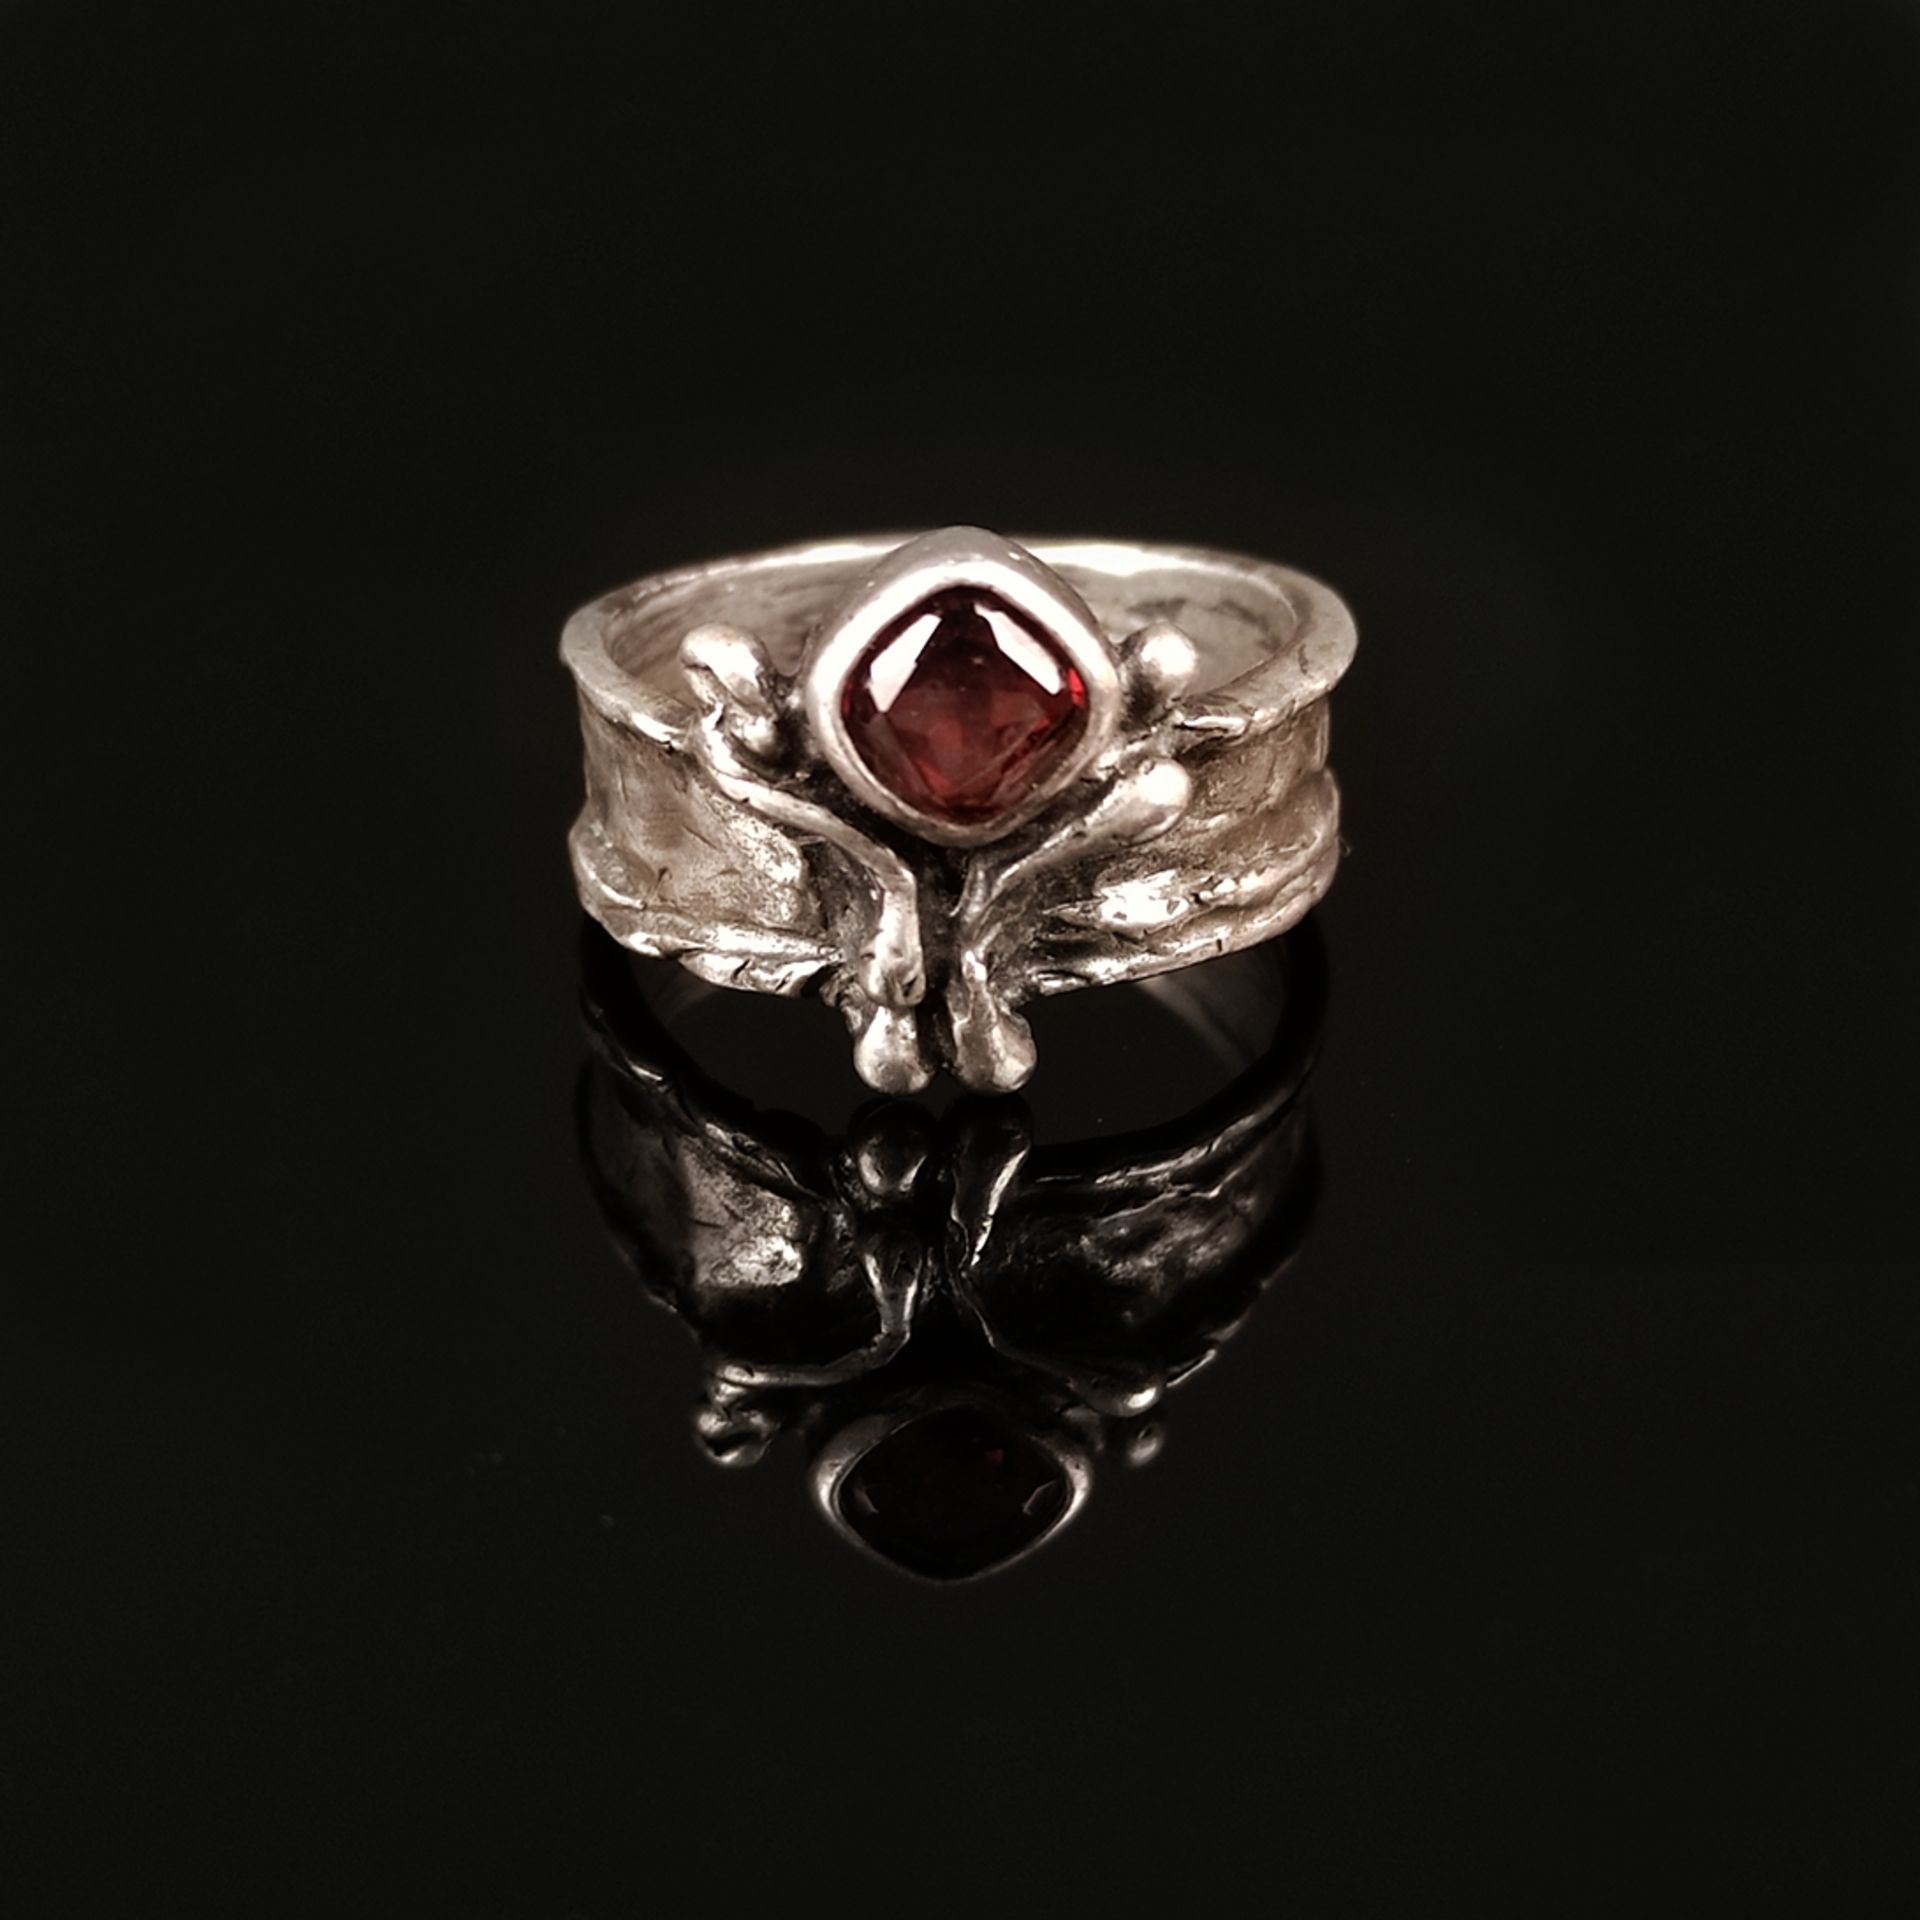 Designer garnet ring, silver 835, 5.9g, Perli-Schmuck Schwäbisch Gmünd, ring designed as a structur - Image 2 of 3